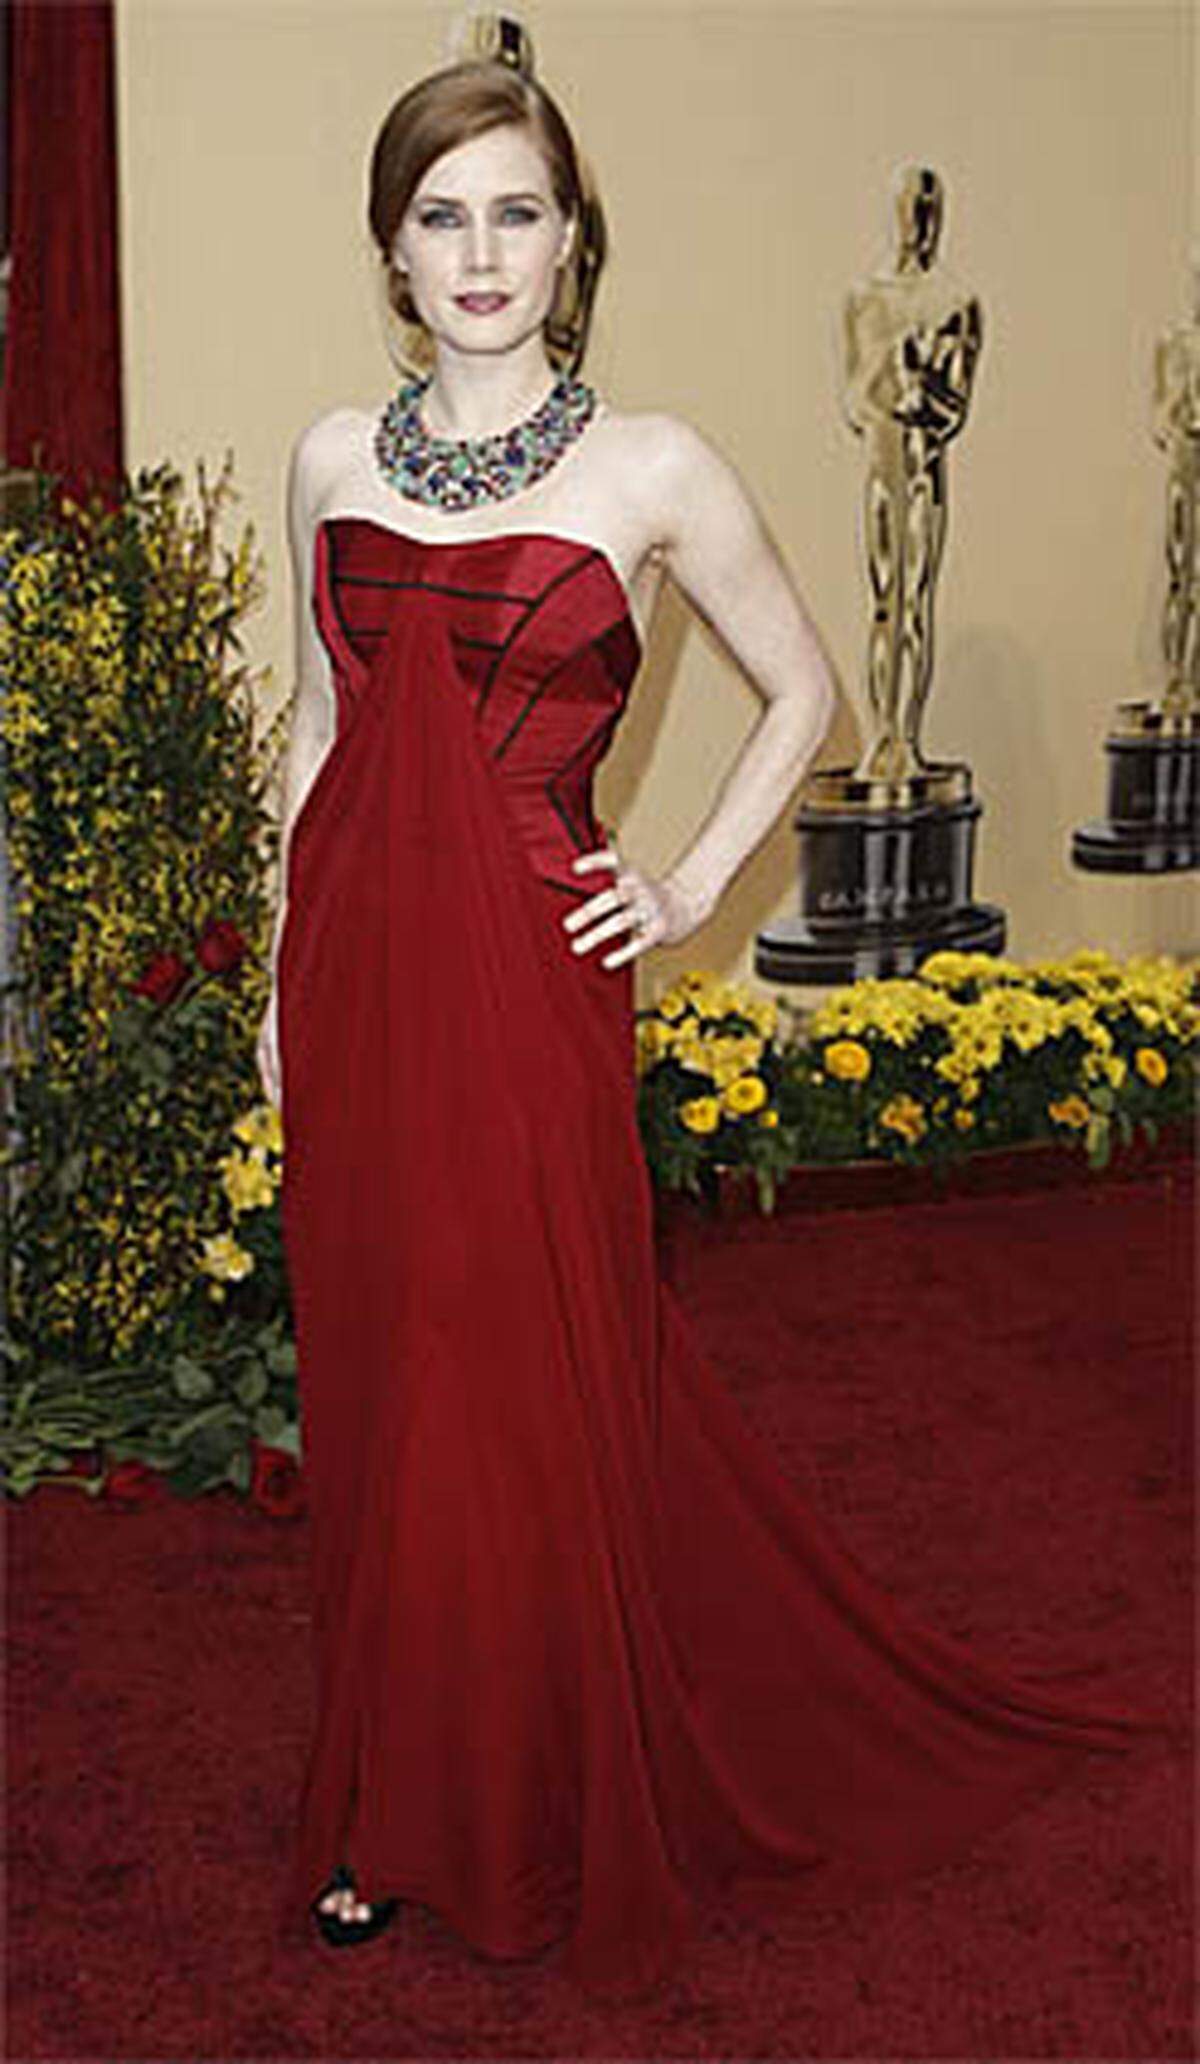 Amy Adams, nominiert in der Kategorie Beste Nebendarstellerin für "Glaubensfrage", hielt sich bedeckt.